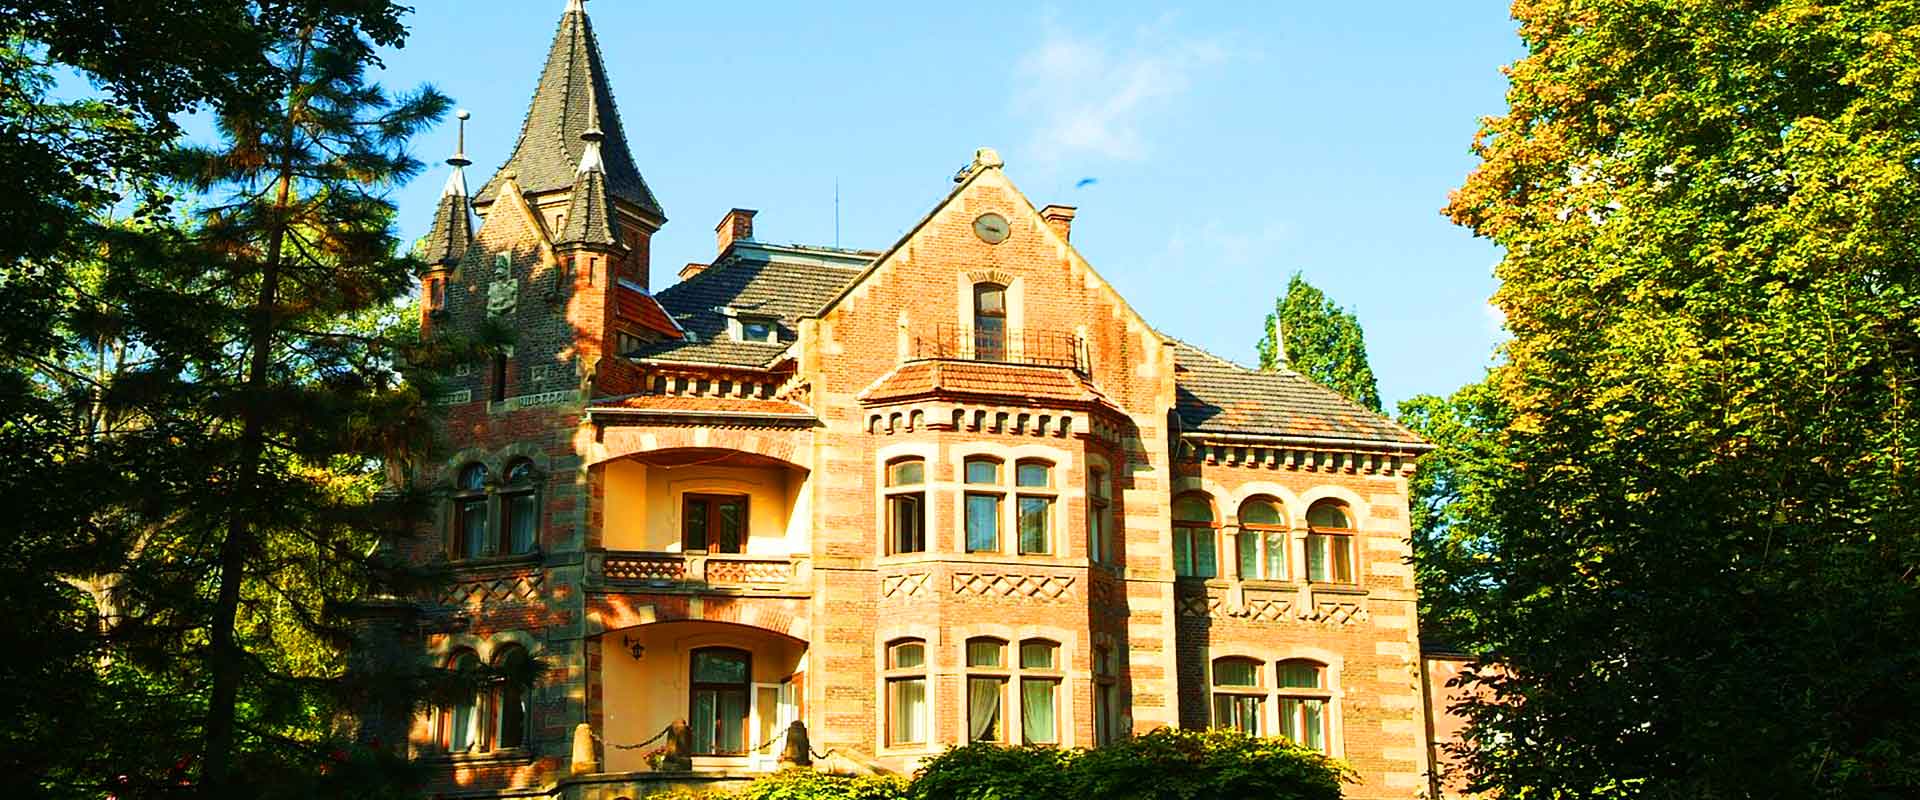 Pałac Żeleńskich w Grodkowicach